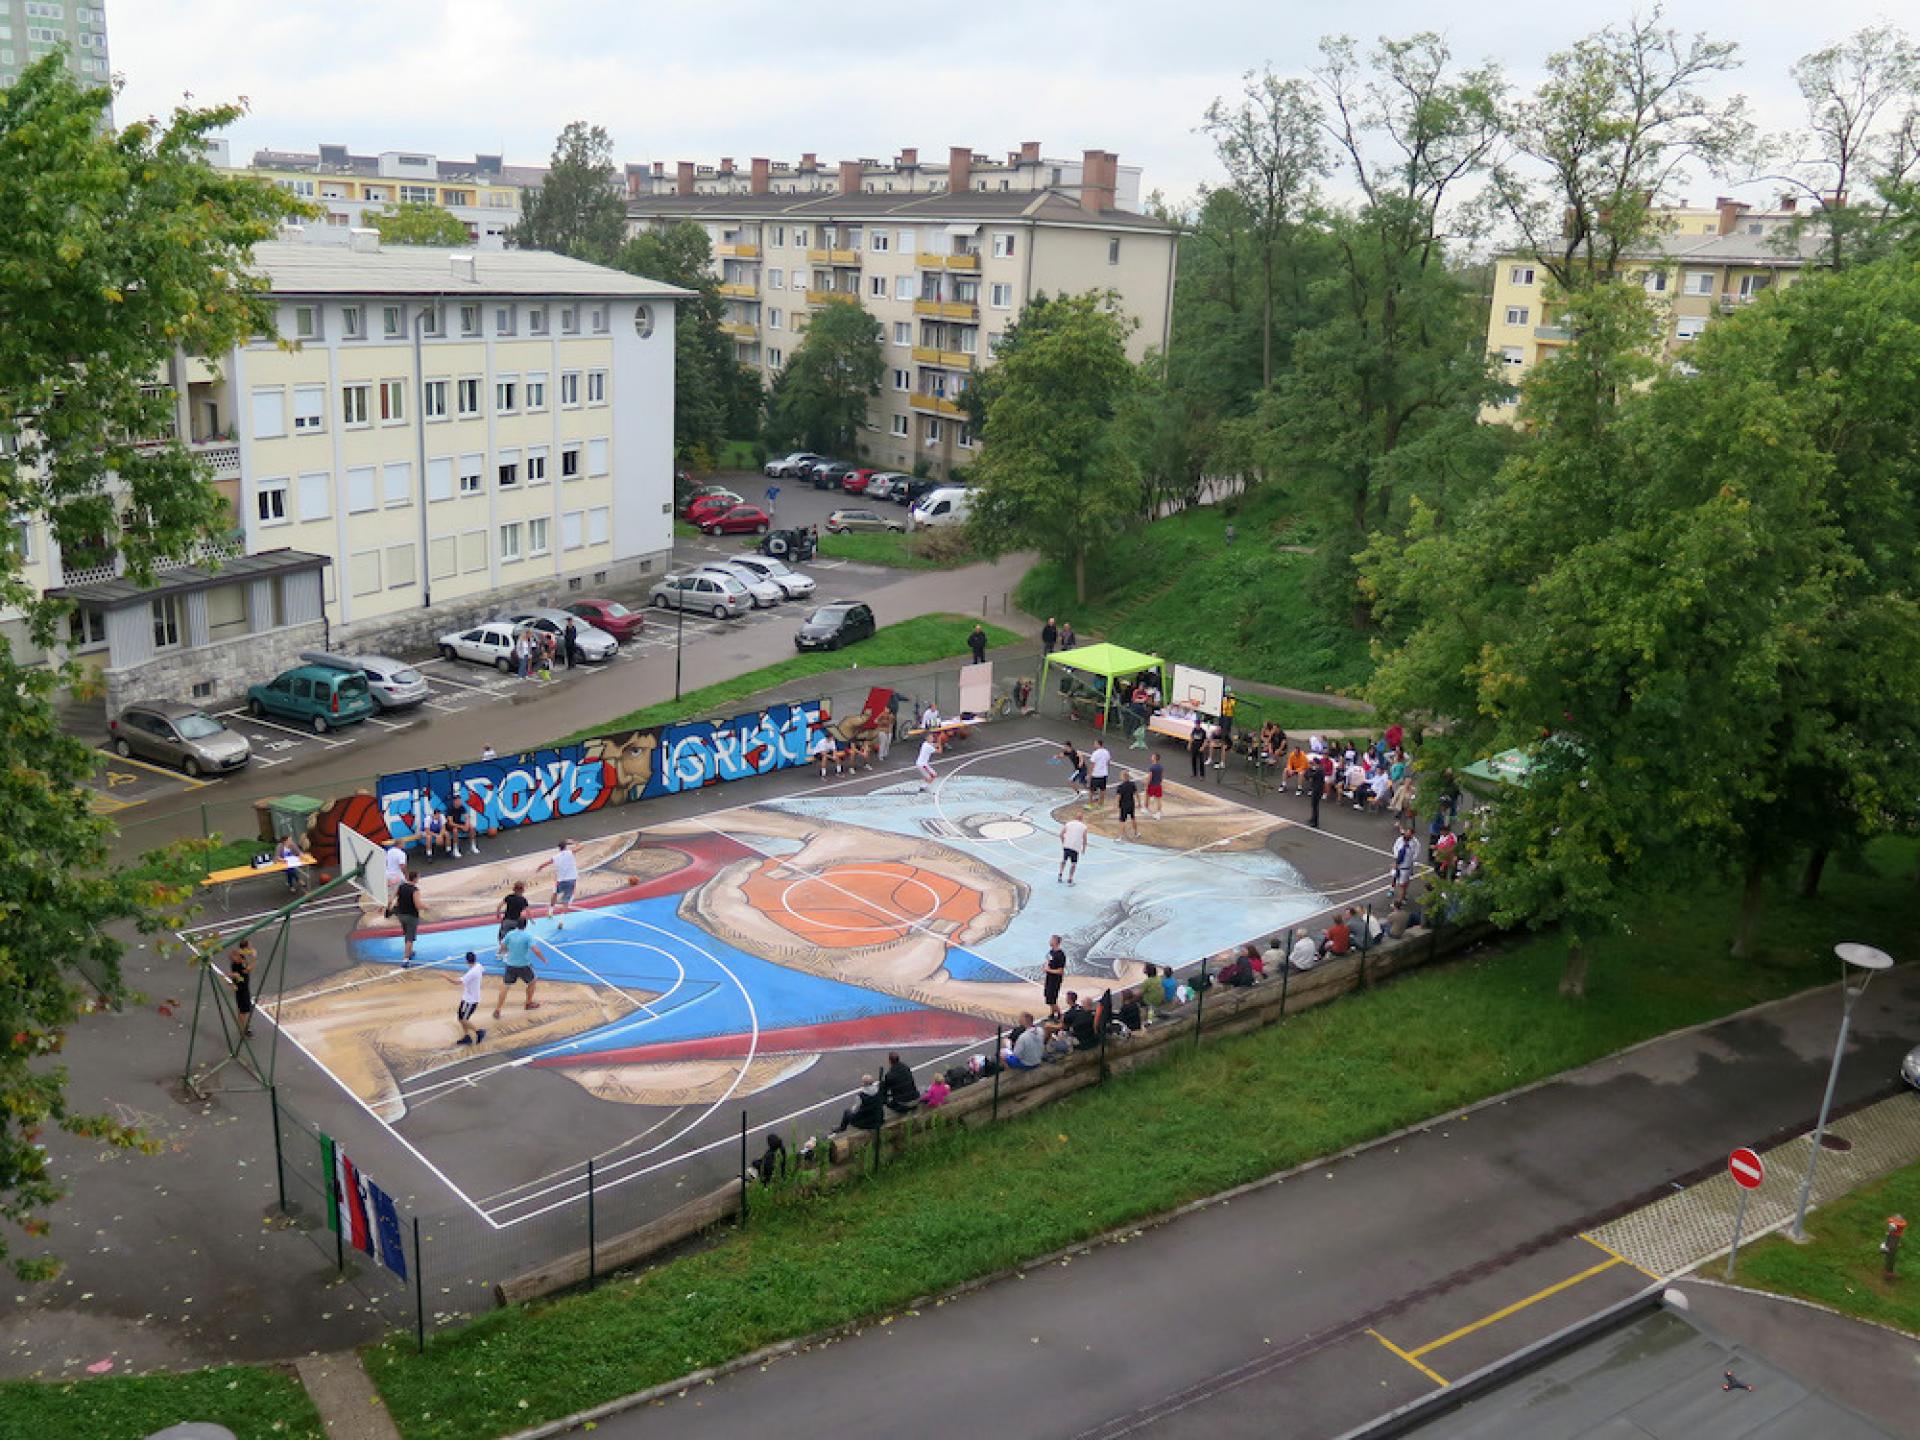 Basketball tournament in Savsko naselje in Ljubljana. | Photo via prostoRož